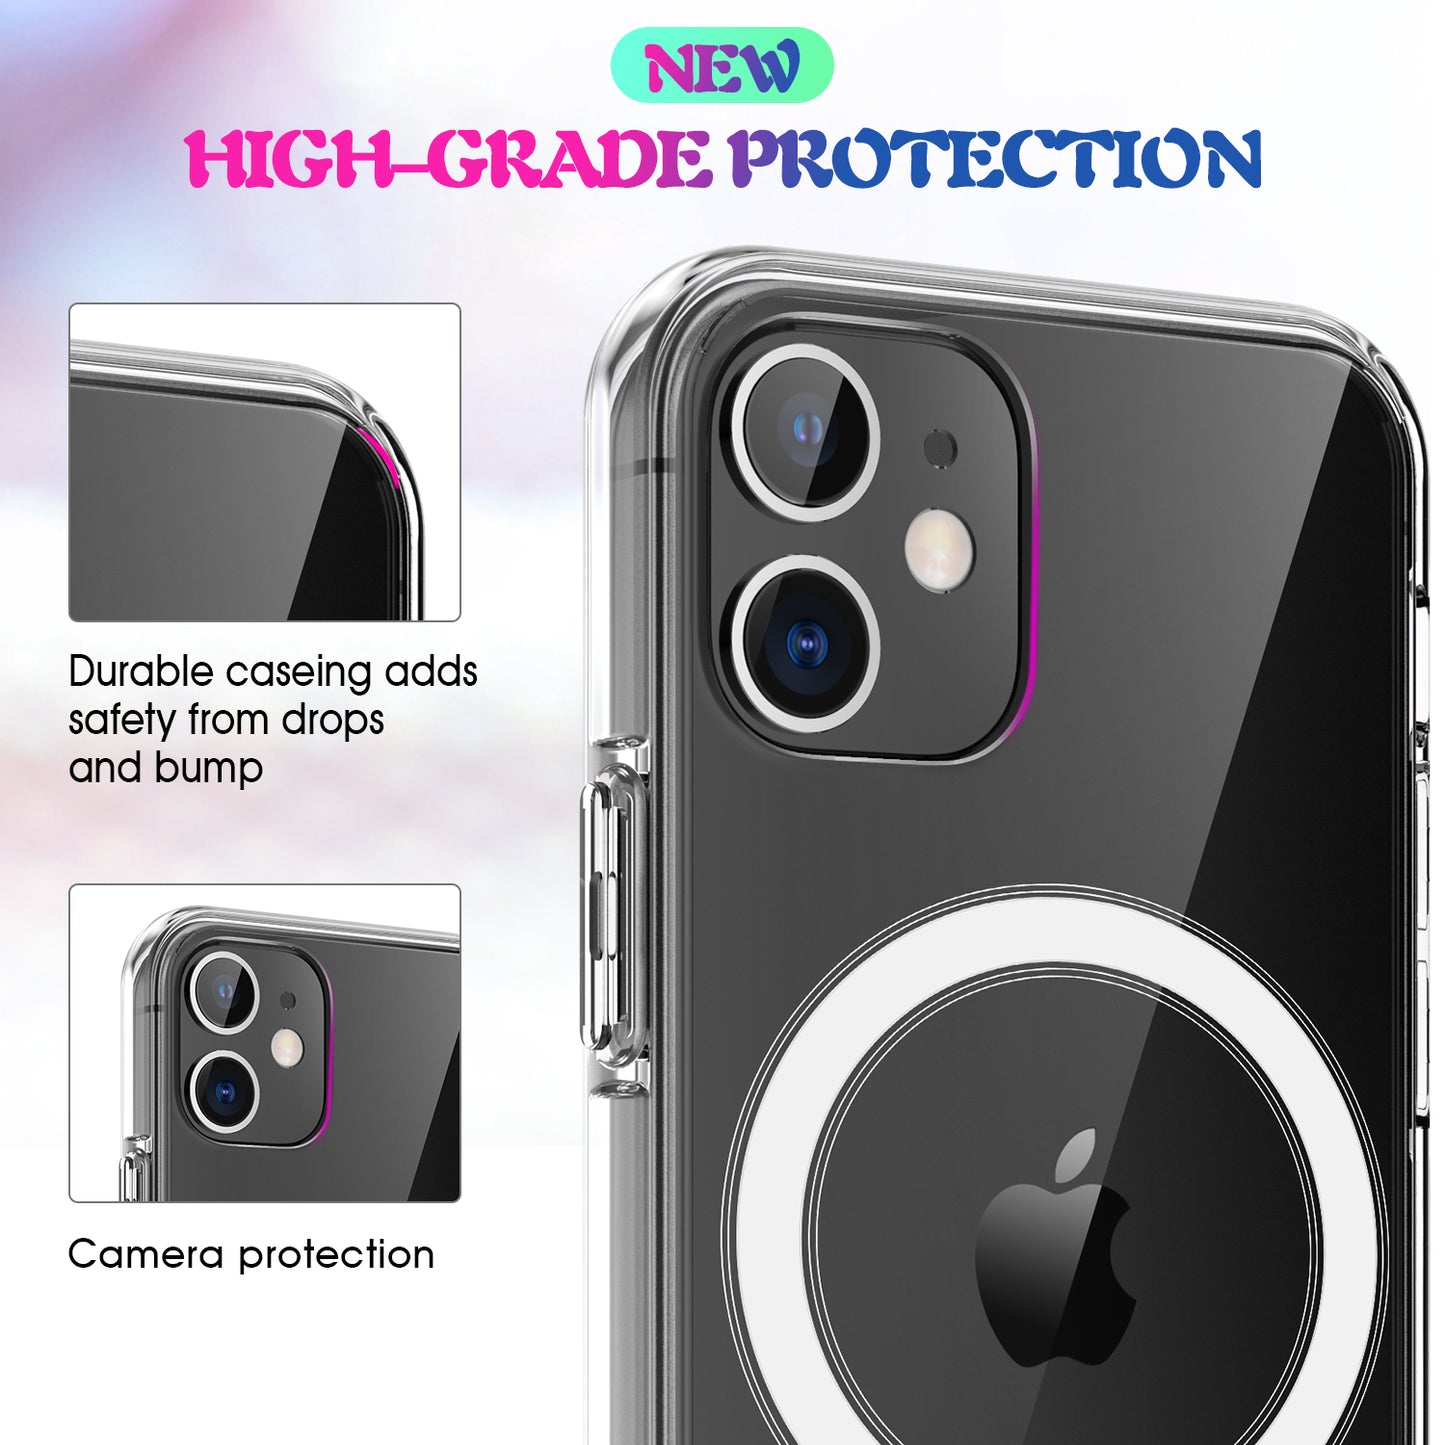 Round Magsafe iPhone 12 Case Super Slim 1.5mm 2H Hard Acrylic TPU Bumper